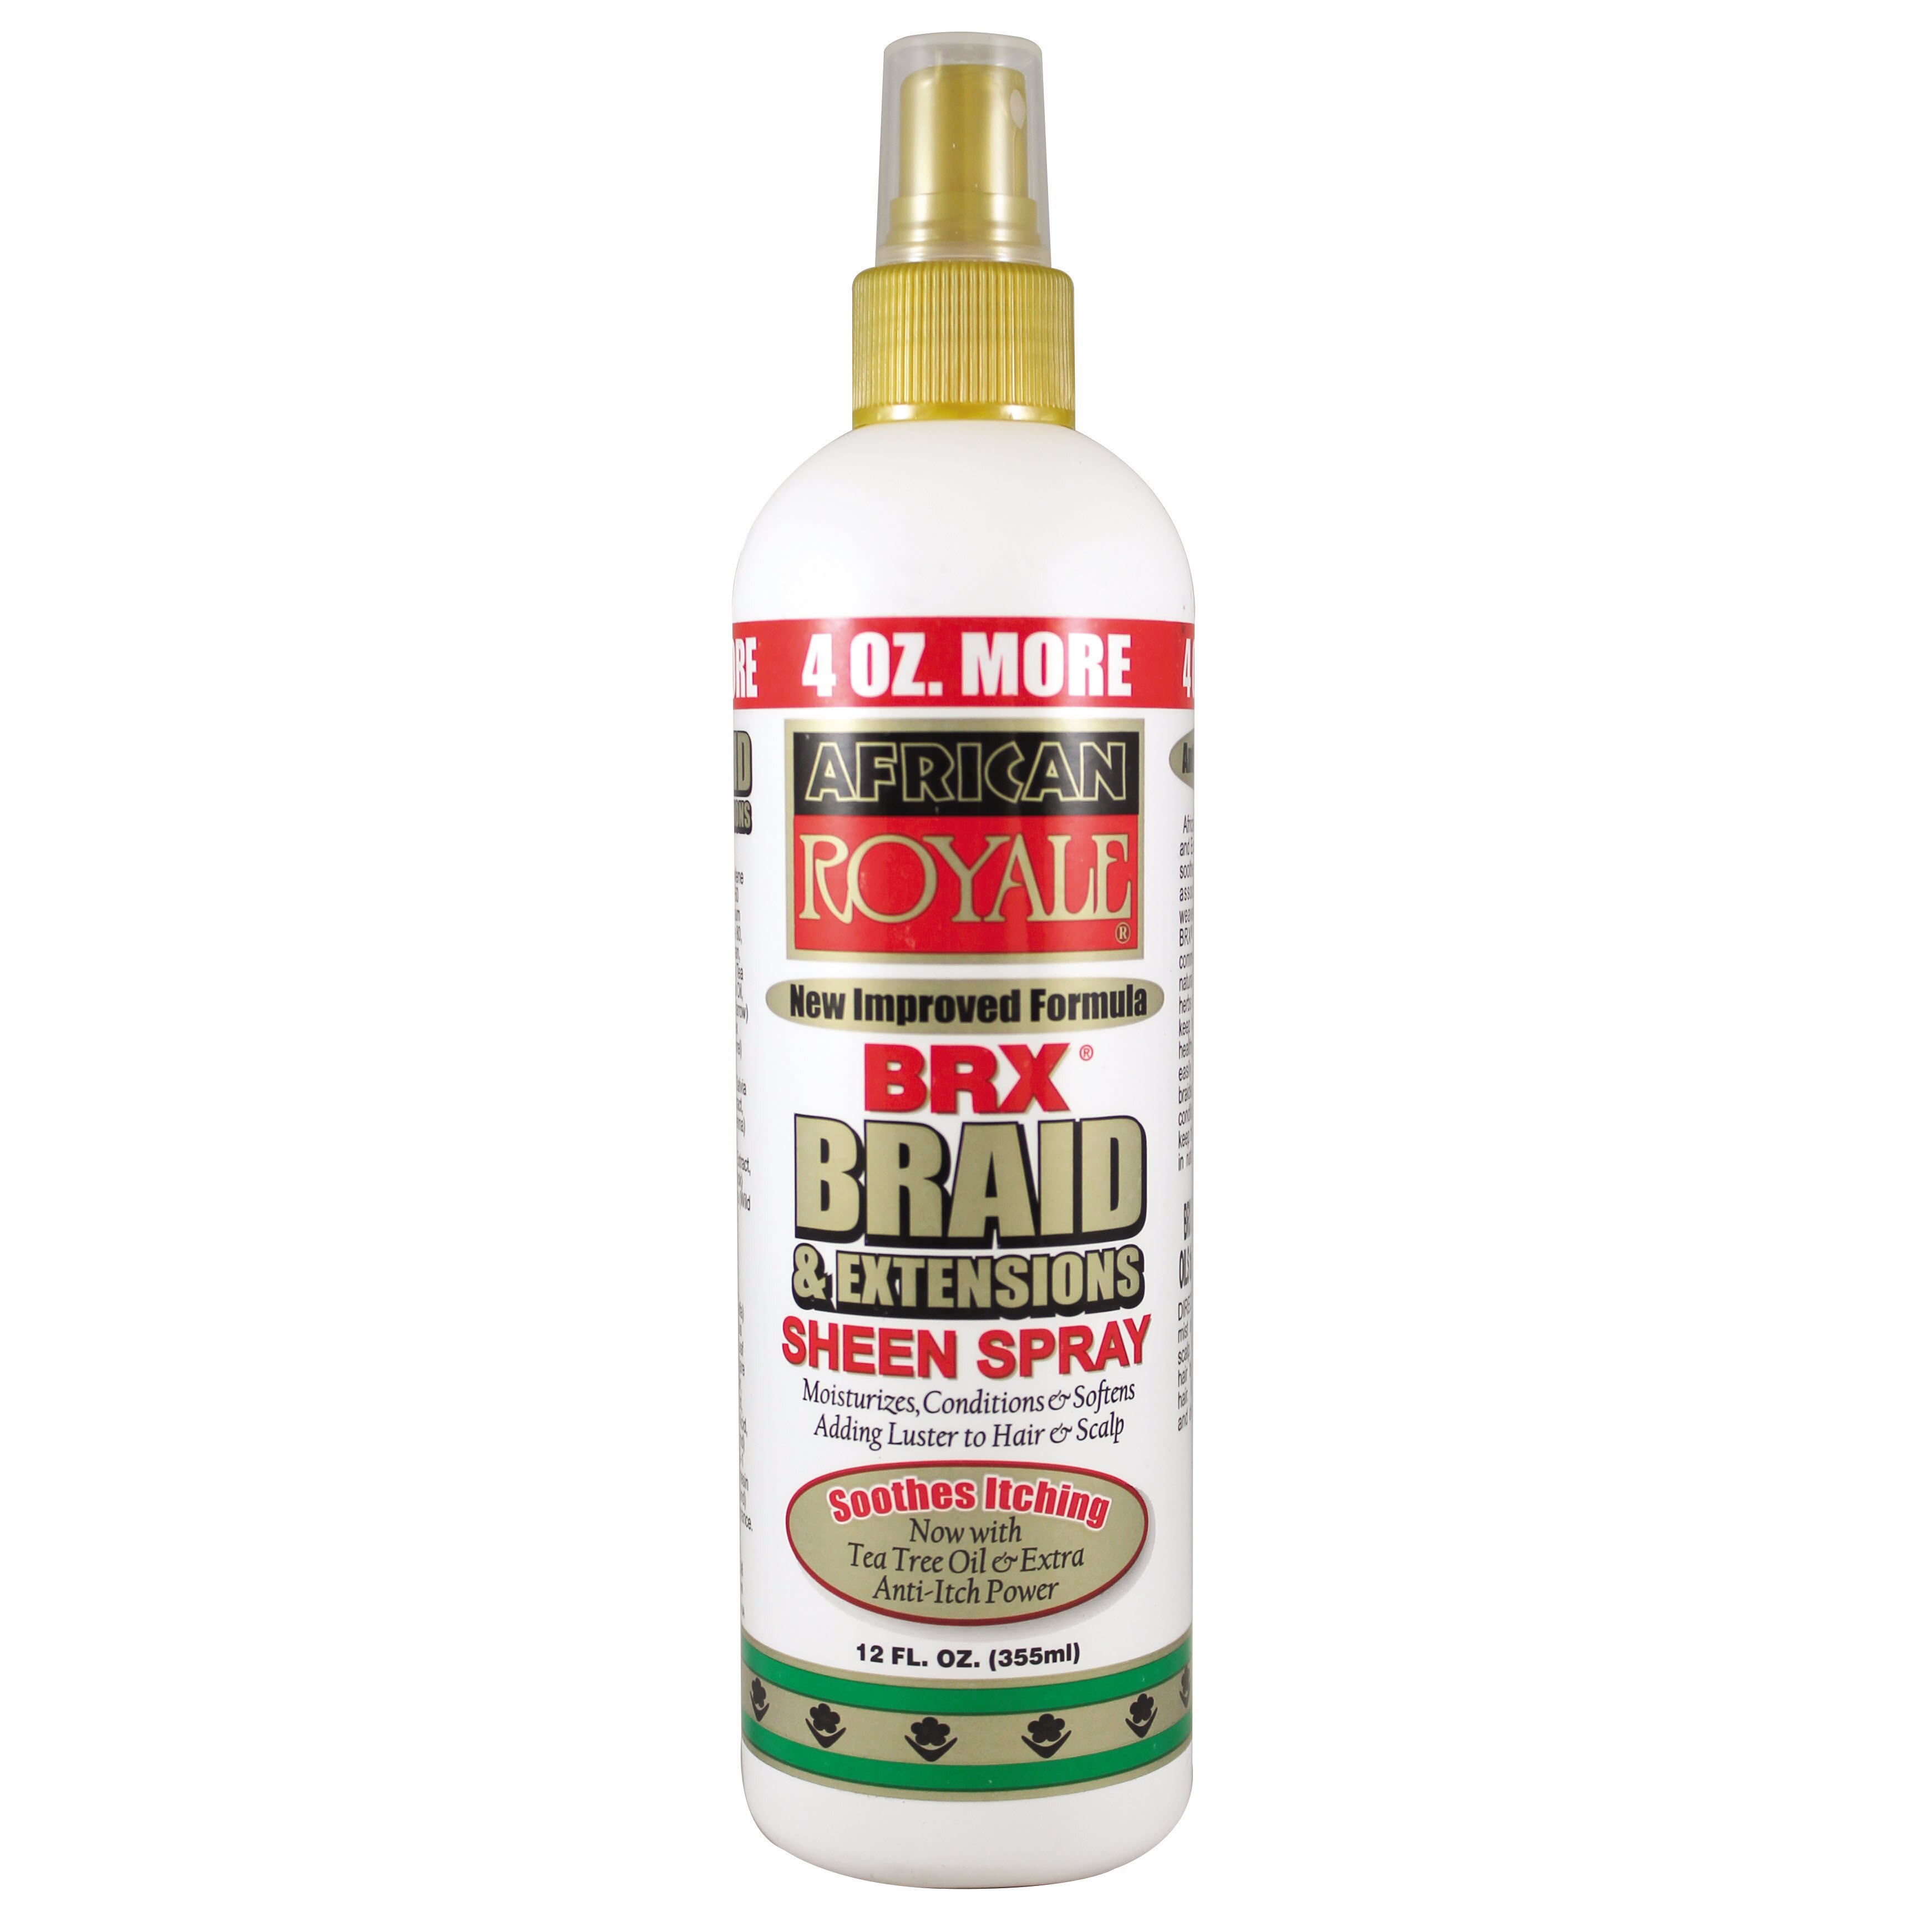 African Royale  BRX Braid Sheen Spray, 12 OZ